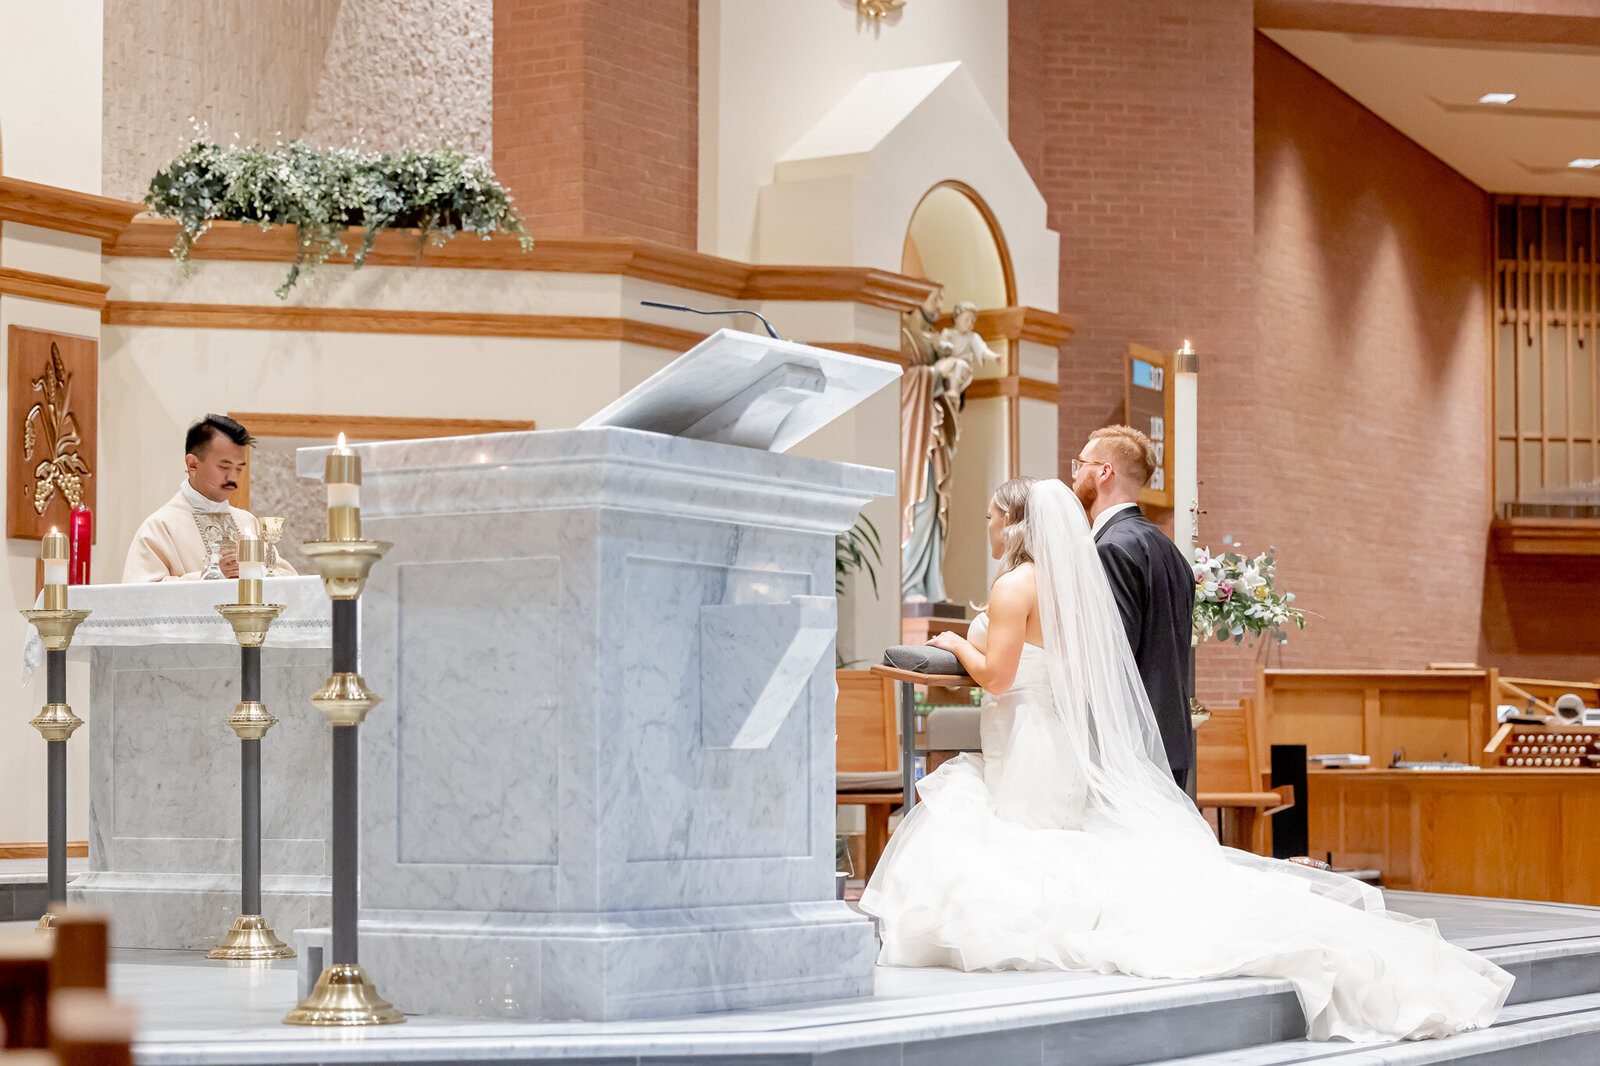 Catholic Wedding Ceremony at St Marys Catholic Church in Tulsa Oklahoma